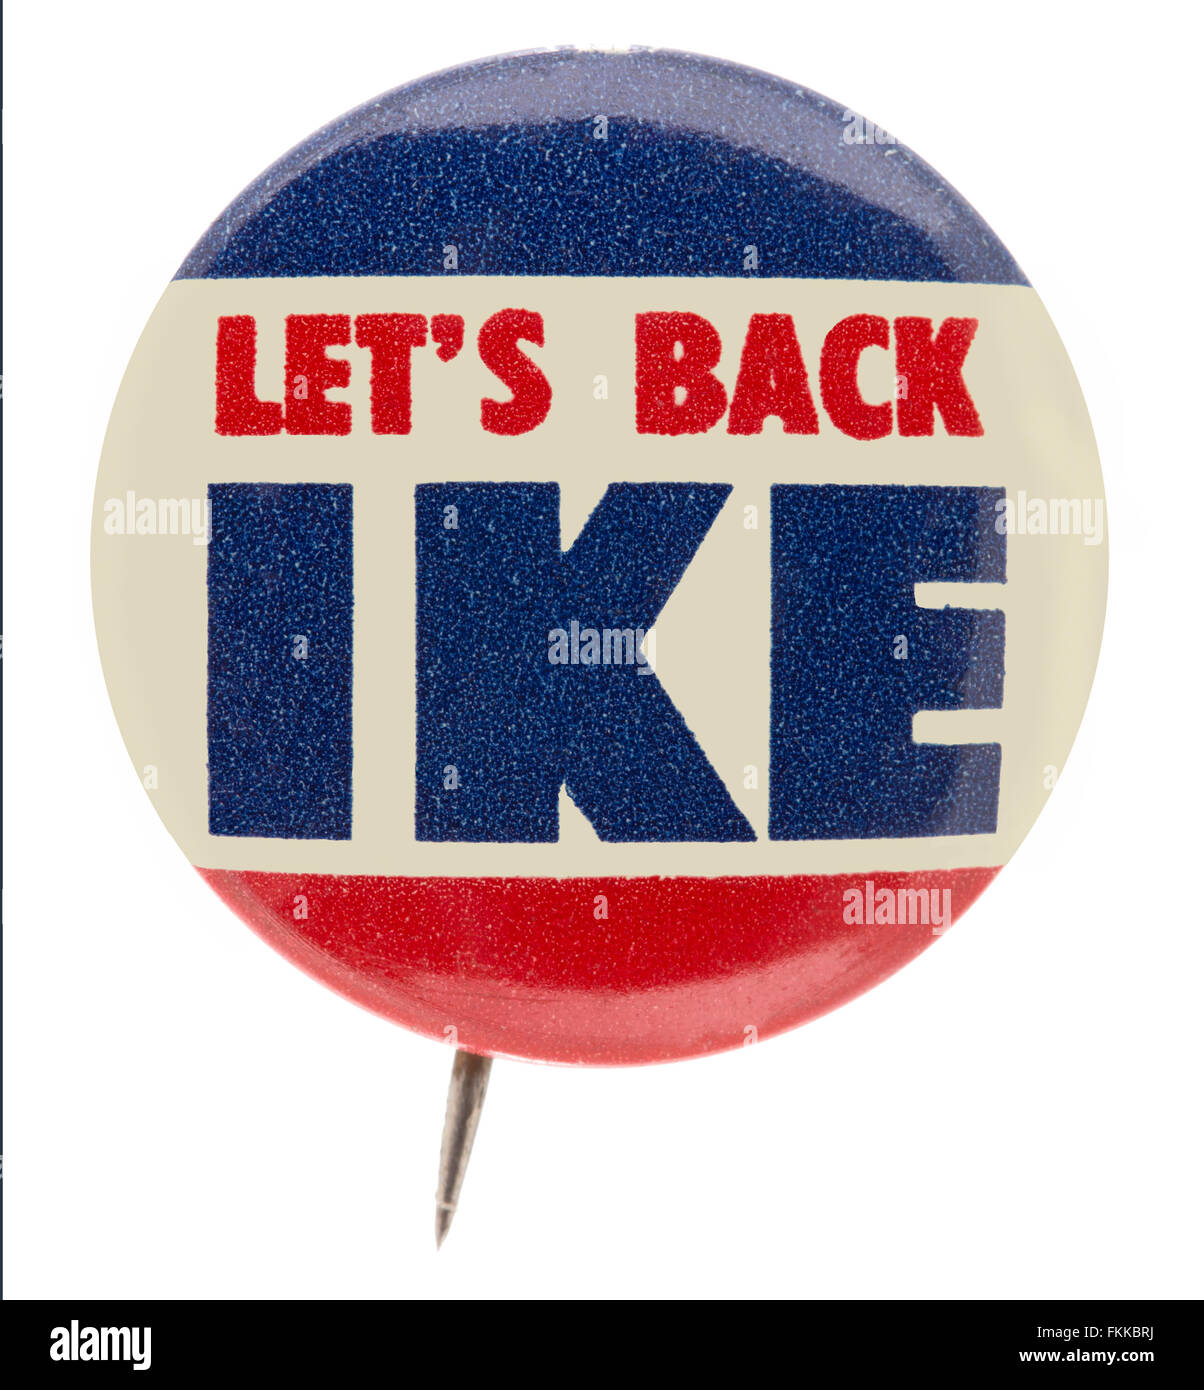 1950er Jahren Dwight D. Eisenhower Präsidentenkampagne pin zurück Knopf Abzeichen mit dem Slogan wollen wir wieder Ike Stockfoto